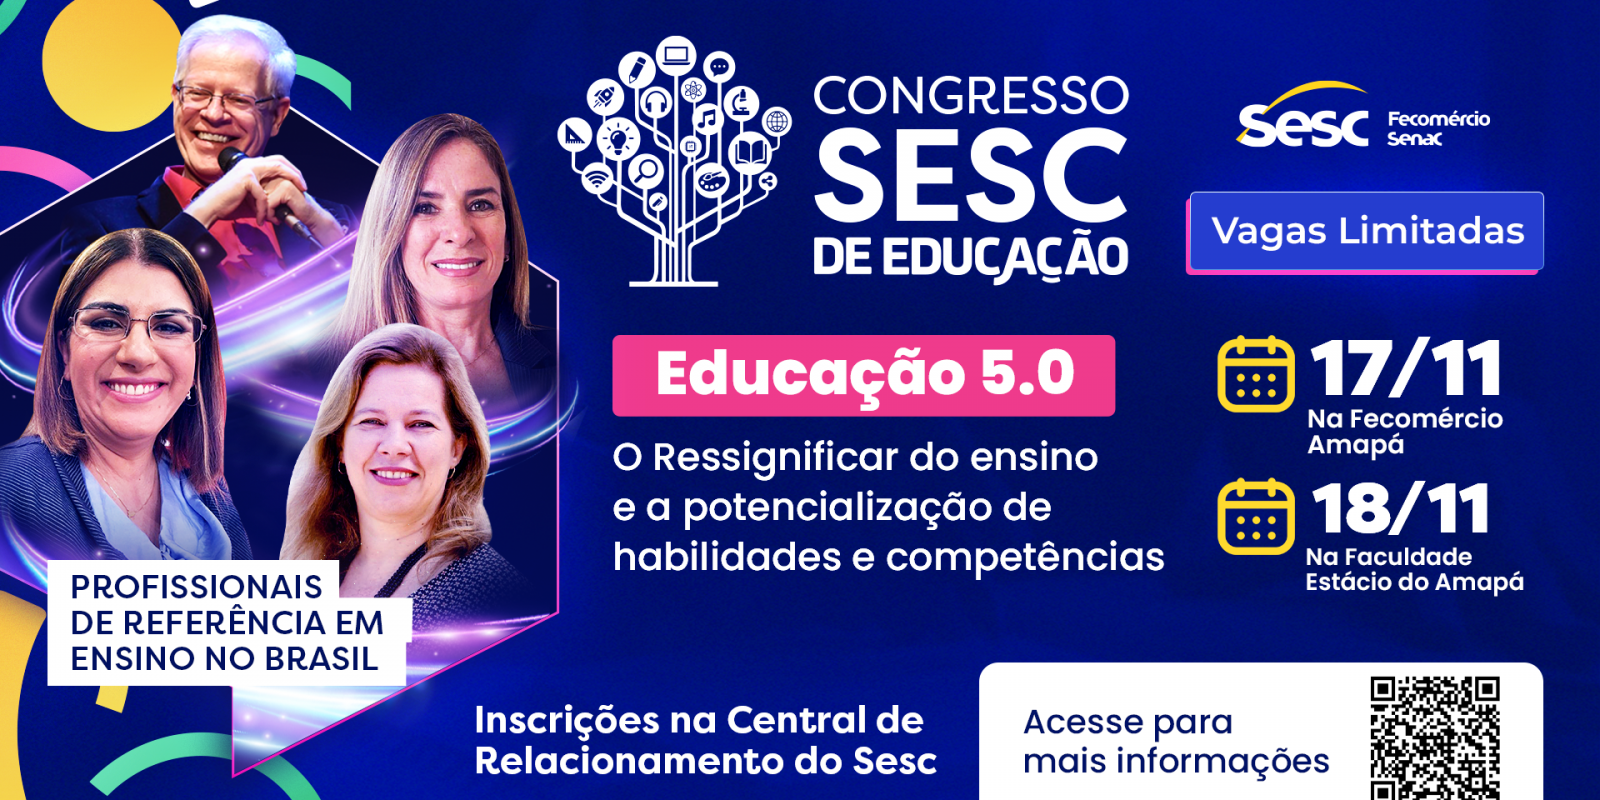 1º Congresso Sesc de Educação traz palestras nacionais de especialistas em Educação 5.0